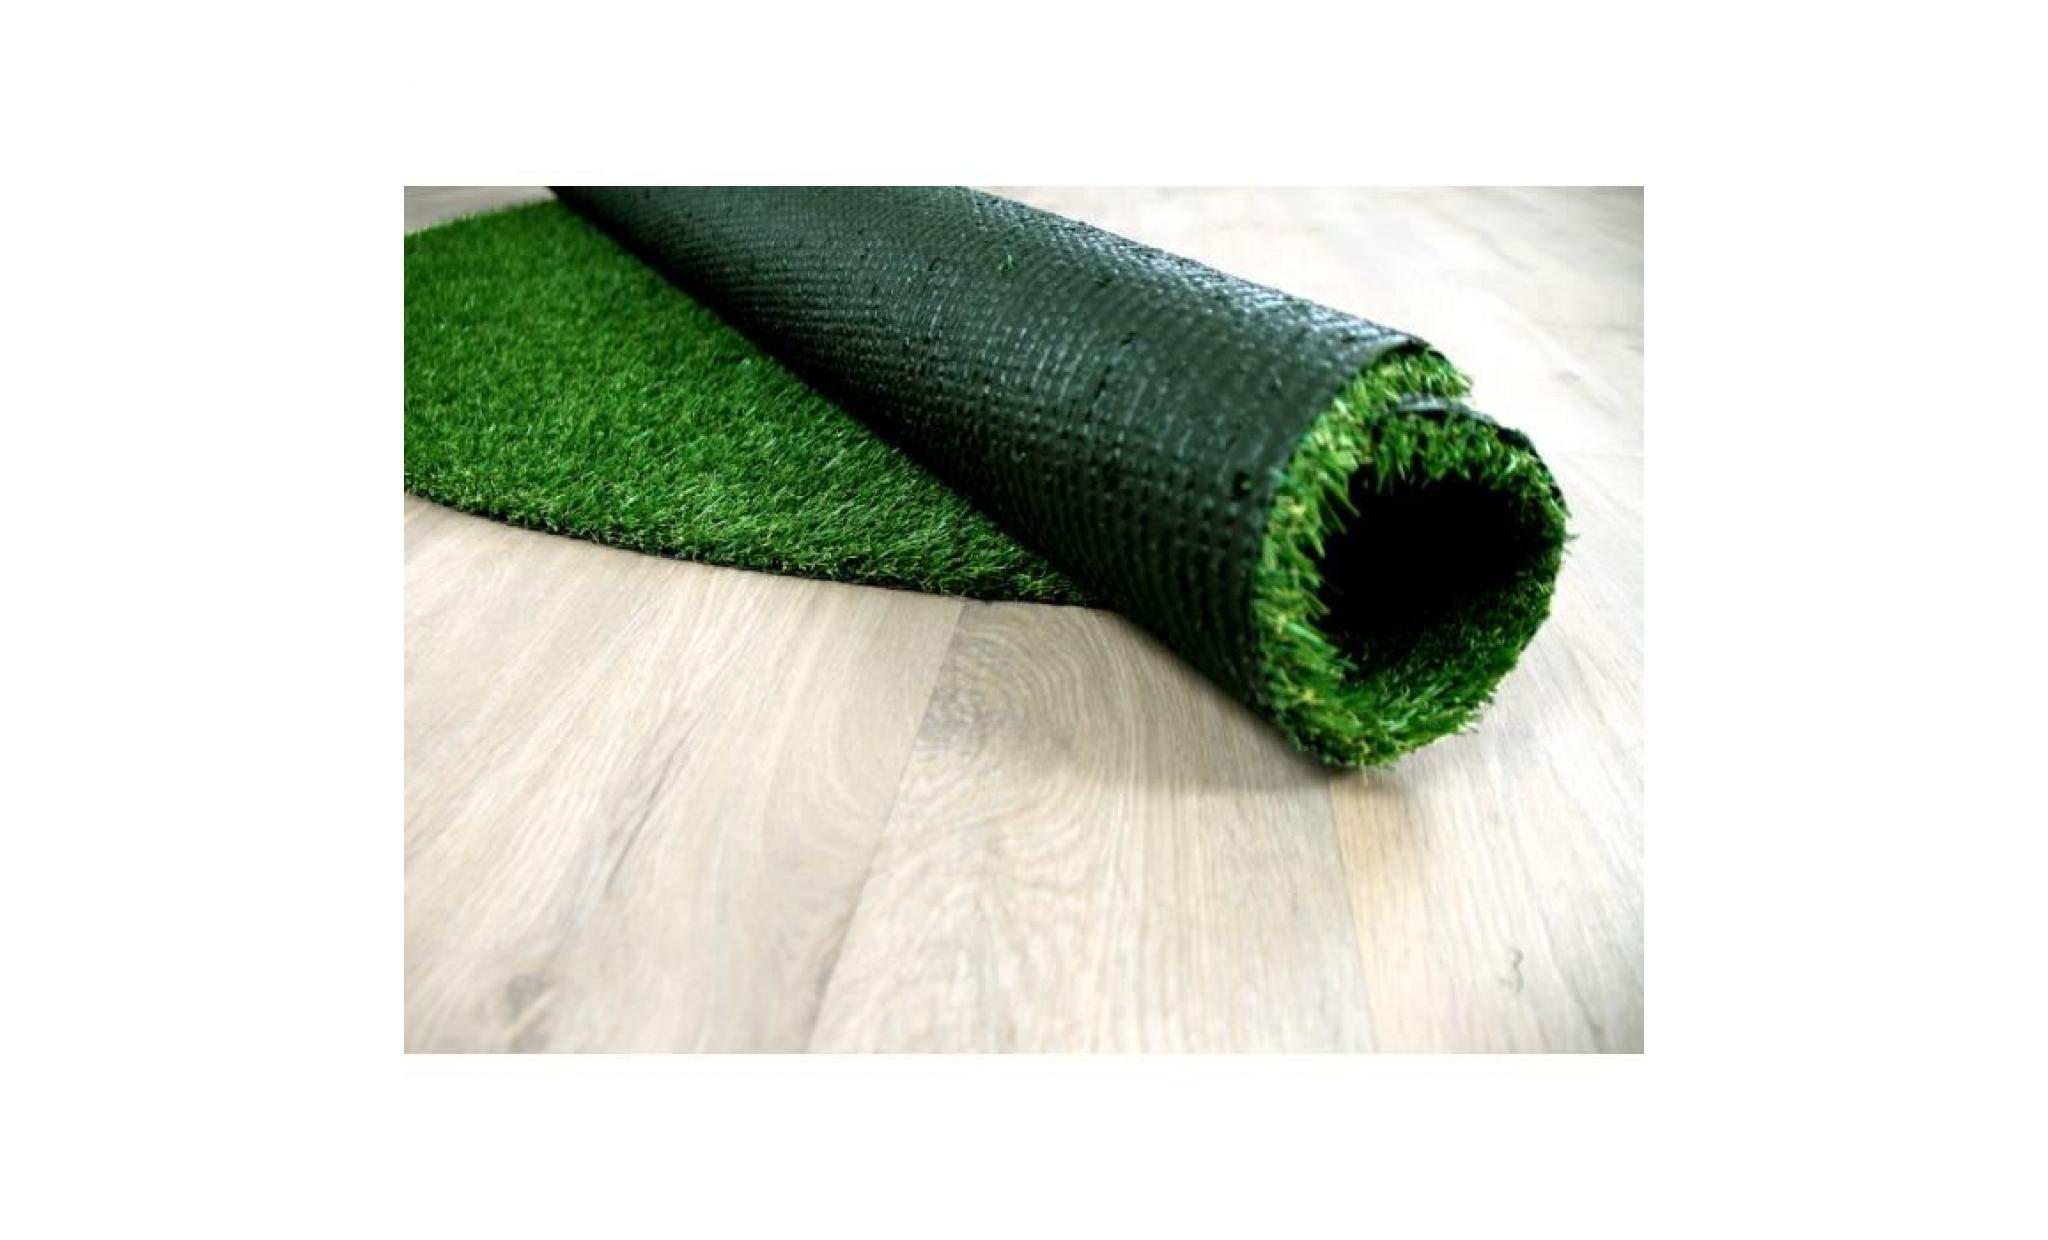 wembley   tapis type luxe gazon artificiel rond – pour jardin, terrasse, balcon   vert  [200 cm rond] pas cher